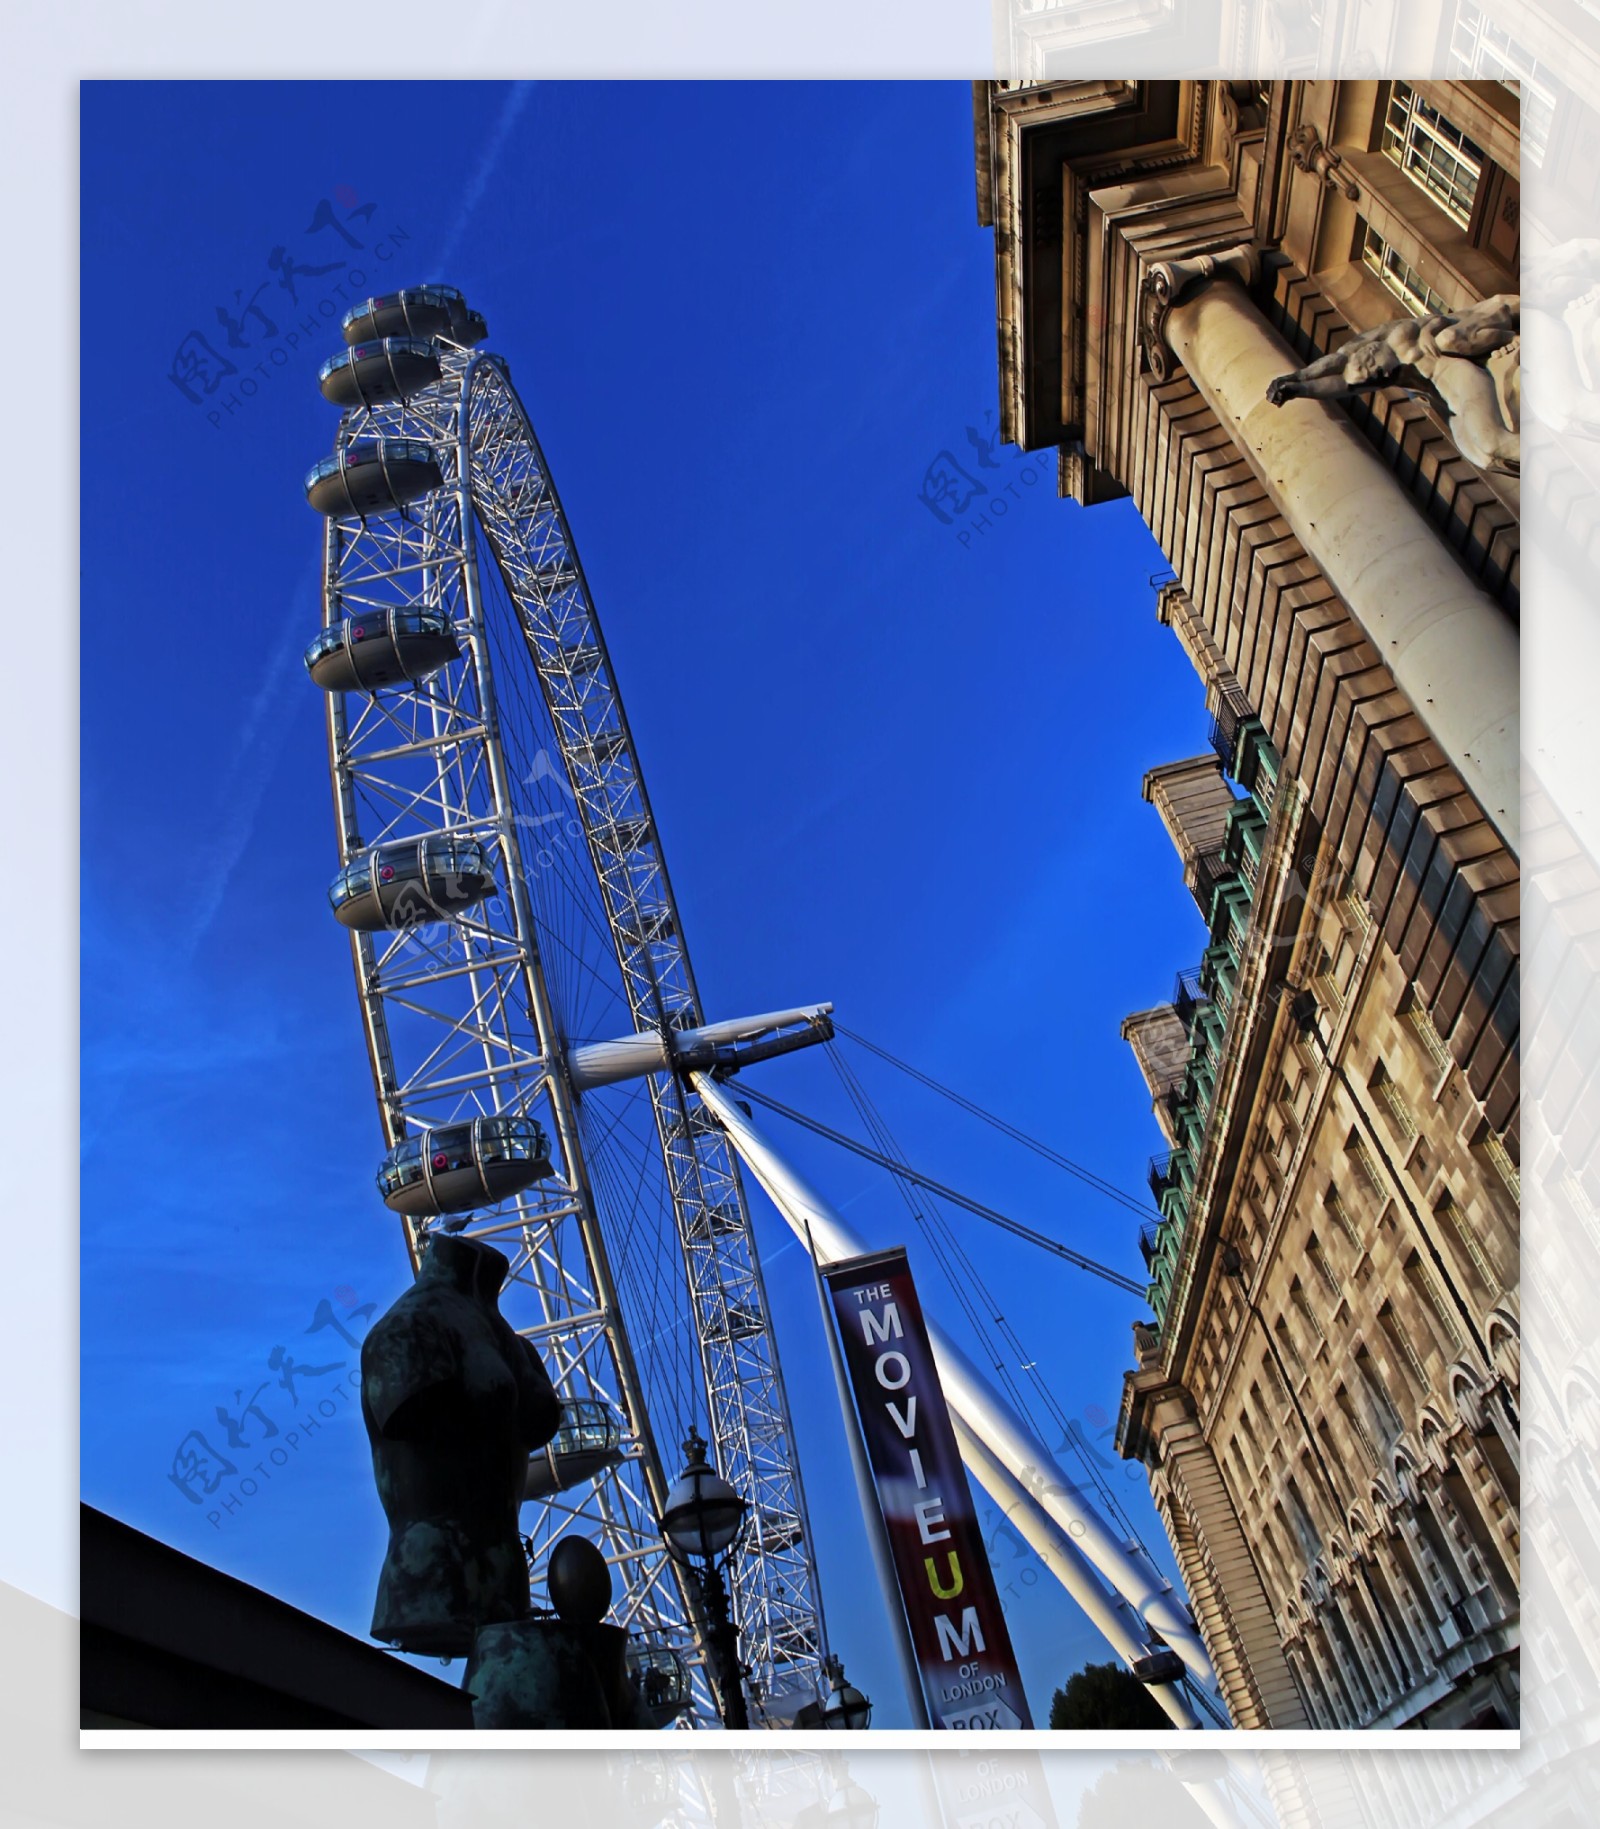 伦敦眼,又称千禧之轮，坐落在伦敦泰晤士河畔，是世界第四大摩天轮